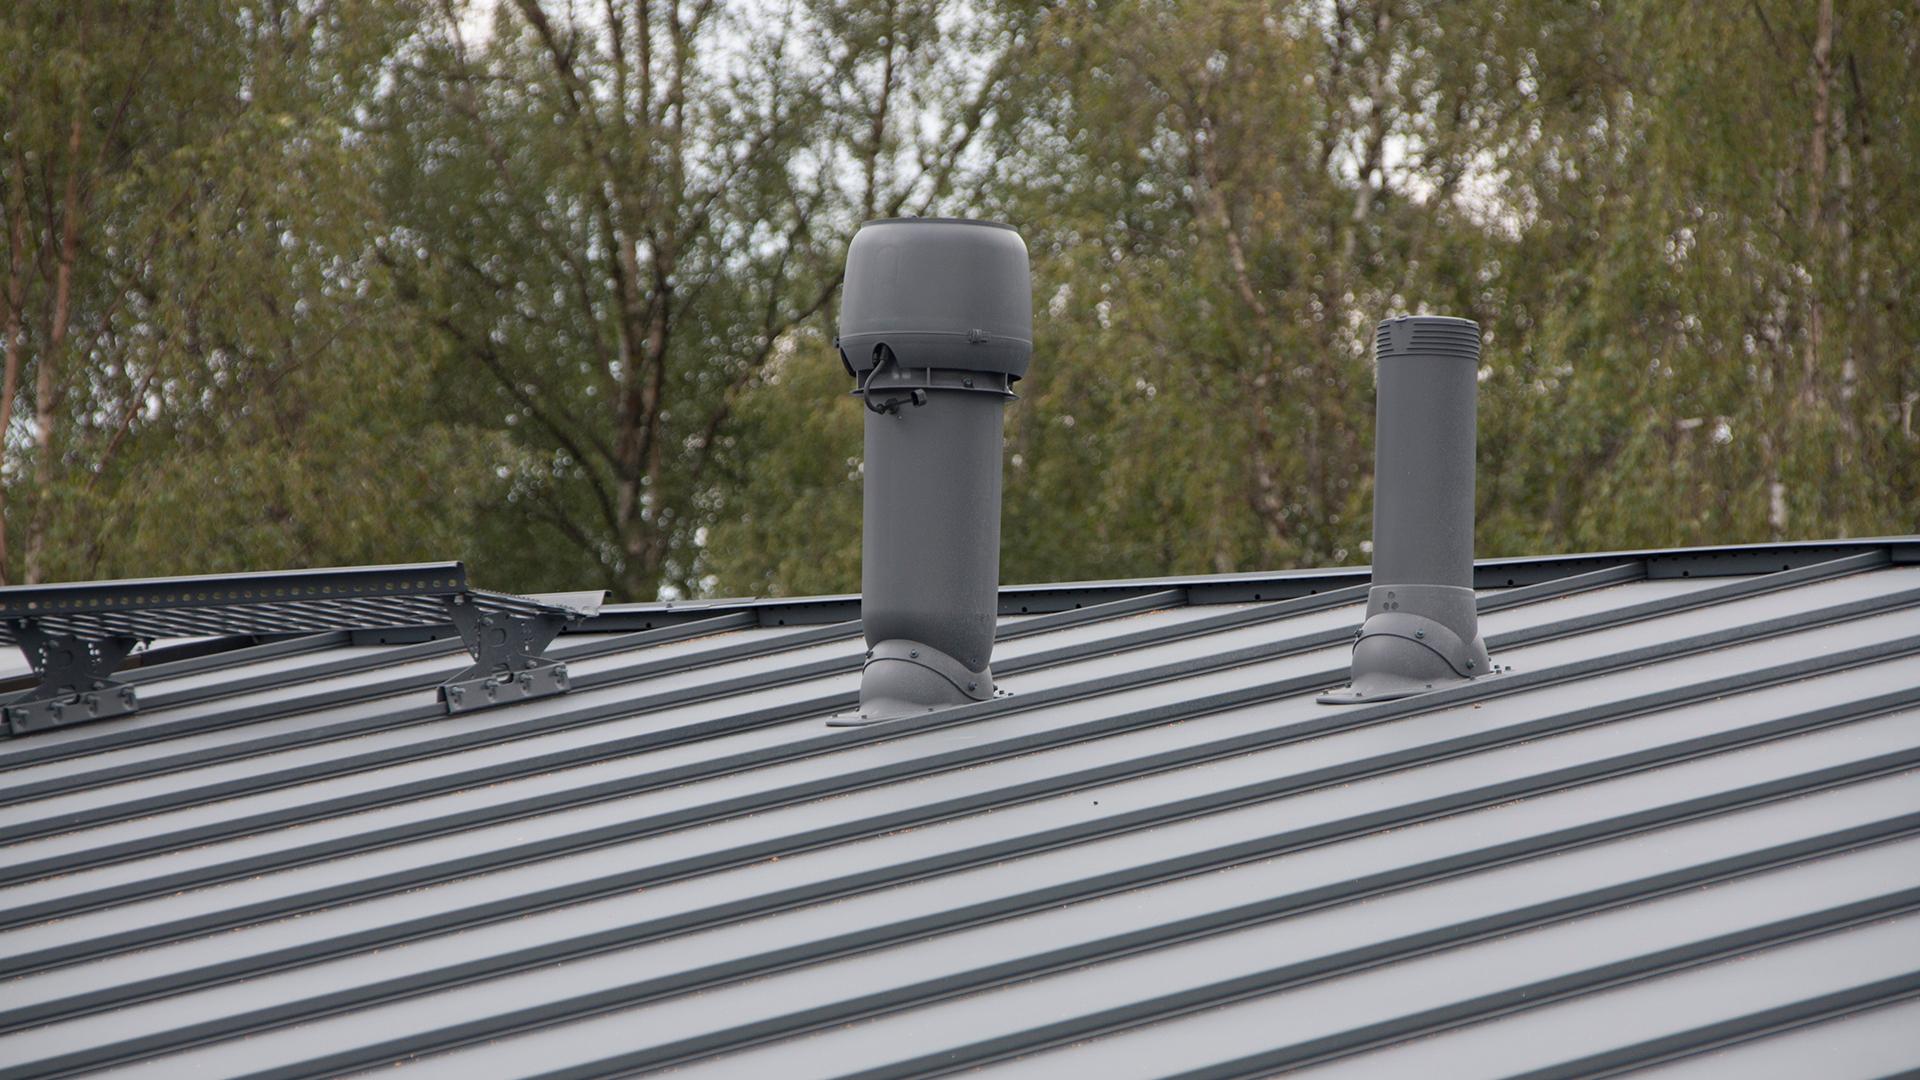 Tuotteet kiinnitettään katolle läpivientien avulla. VILPE®-läpivienti on turvallinen valinta, sillä se on täysin vesitiivis.